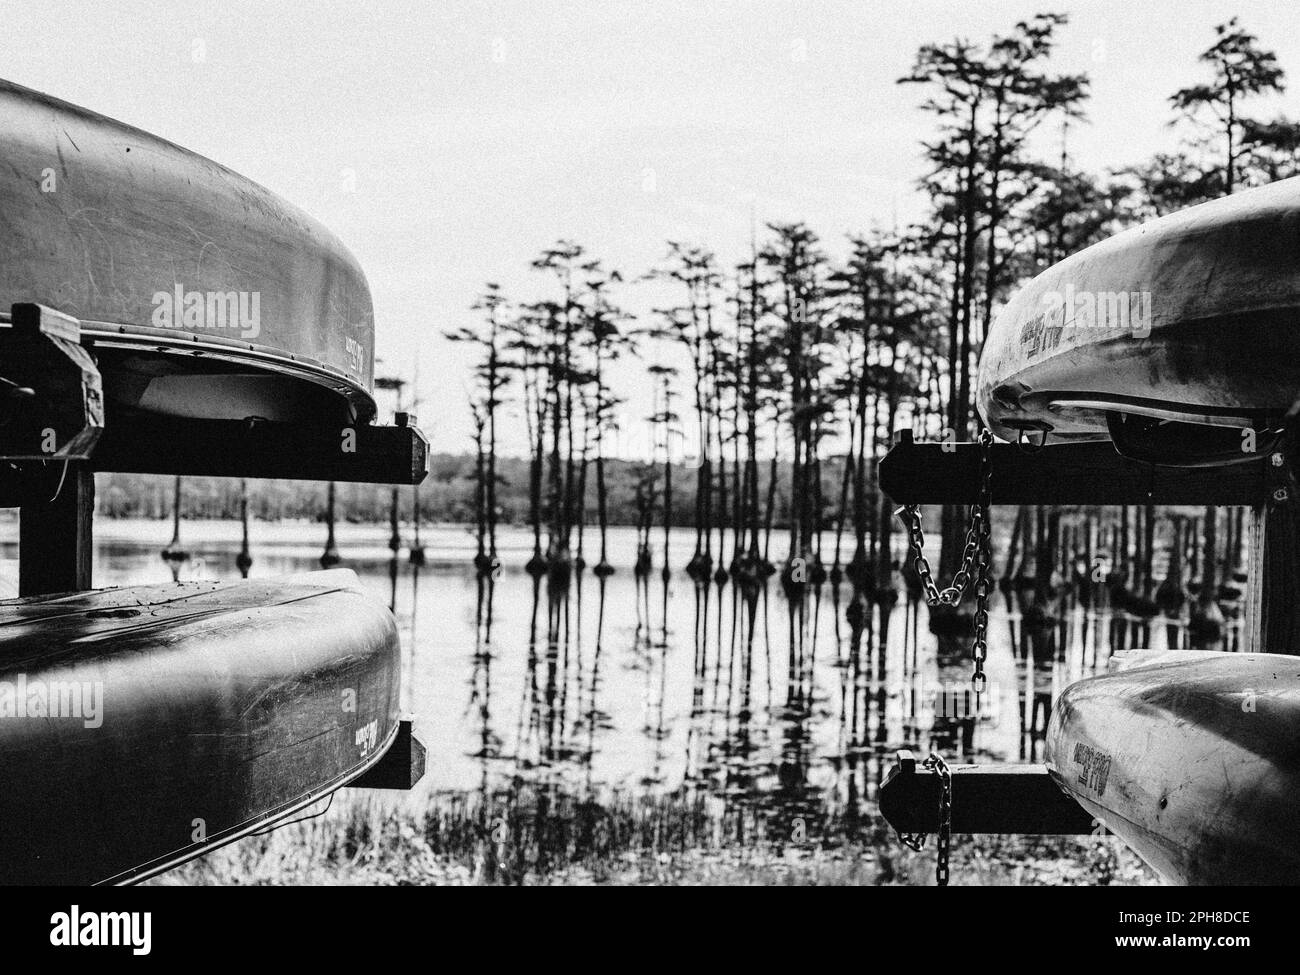 Bateaux sur l'eau - Caroline du Sud Banque D'Images